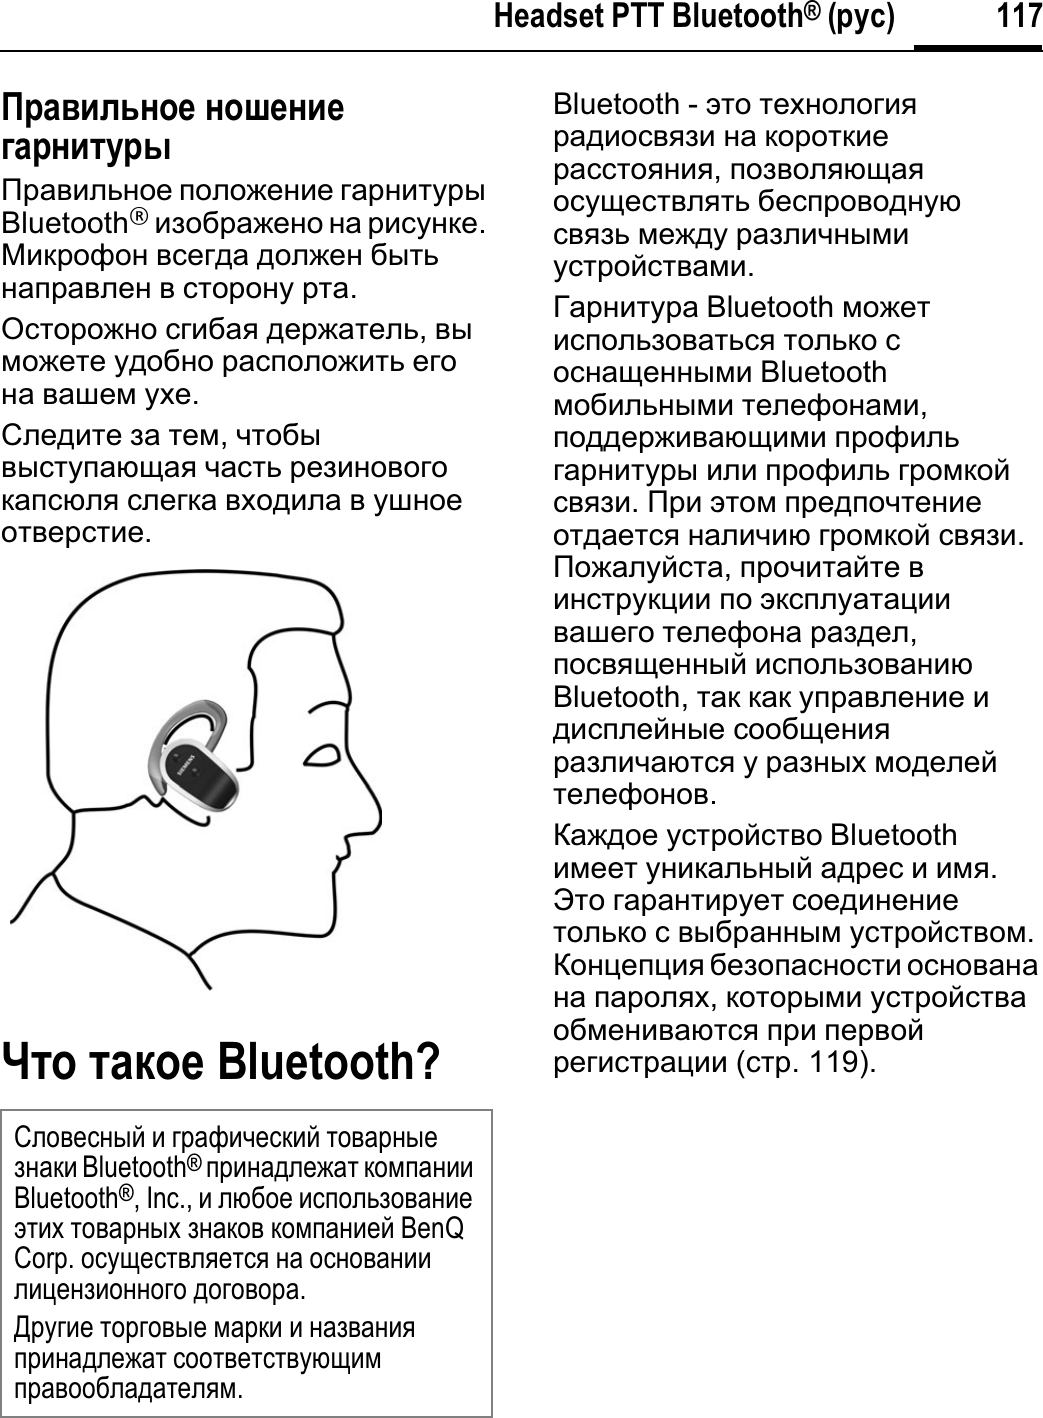 117Headset PTT Bluetooth® (ɫɮɬ)Ɋɫɛɝɣɦɷɨɩɠ ɨɩɳɠɨɣɠɞɛɫɨɣɭɮɫɶɉɪɚɜɢɥɶɧɨɟ ɩɨɥɨɠɟɧɢɟ ɝɚɪɧɢɬɭɪɵBluetooth®ɢɡɨɛɪɚɠɟɧɨ ɧɚ ɪɢɫɭɧɤɟ.Ɇɢɤɪɨɮɨɧ ɜɫɟɝɞɚ ɞɨɥɠɟɧ ɛɵɬɶɧɚɩɪɚɜɥɟɧ ɜ ɫɬɨɪɨɧɭ ɪɬɚ.Ɉɫɬɨɪɨɠɧɨ ɫɝɢɛɚɹ ɞɟɪɠɚɬɟɥɶ,ɜɵɦɨɠɟɬɟ ɭɞɨɛɧɨ ɪɚɫɩɨɥɨɠɢɬɶ ɟɝɨɧɚ ɜɚɲɟɦ ɭɯɟ.ɋɥɟɞɢɬɟ ɡɚ ɬɟɦ,ɱɬɨɛɵɜɵɫɬɭɩɚɸɳɚɹ ɱɚɫɬɶ ɪɟɡɢɧɨɜɨɝɨɤɚɩɫɸɥɹ ɫɥɟɝɤɚ ɜɯɨɞɢɥɚ ɜ ɭɲɧɨɟɨɬɜɟɪɫɬɢɟ.ɒɭɩ ɭɛɥɩɠ Bluetooth?Bluetooth - ɷɬɨ ɬɟɯɧɨɥɨɝɢɹɪɚɞɢɨɫɜɹɡɢ ɧɚ ɤɨɪɨɬɤɢɟɪɚɫɫɬɨɹɧɢɹ,ɩɨɡɜɨɥɹɸɳɚɹɨɫɭɳɟɫɬɜɥɹɬɶ ɛɟɫɩɪɨɜɨɞɧɭɸɫɜɹɡɶ ɦɟɠɞɭ ɪɚɡɥɢɱɧɵɦɢɭɫɬɪɨɣɫɬɜɚɦɢ.Ƚɚɪɧɢɬɭɪɚ Bluetooth ɦɨɠɟɬɢɫɩɨɥɶɡɨɜɚɬɶɫɹ ɬɨɥɶɤɨ ɫɨɫɧɚɳɟɧɧɵɦɢ Bluetooth ɦɨɛɢɥɶɧɵɦɢ ɬɟɥɟɮɨɧɚɦɢ,ɩɨɞɞɟɪɠɢɜɚɸɳɢɦɢ ɩɪɨɮɢɥɶɝɚɪɧɢɬɭɪɵ ɢɥɢ ɩɪɨɮɢɥɶ ɝɪɨɦɤɨɣɫɜɹɡɢ.ɉɪɢ ɷɬɨɦ ɩɪɟɞɩɨɱɬɟɧɢɟɨɬɞɚɟɬɫɹ ɧɚɥɢɱɢɸ ɝɪɨɦɤɨɣ ɫɜɹɡɢ.ɉɨɠɚɥɭɣɫɬɚ,ɩɪɨɱɢɬɚɣɬɟ ɜɢɧɫɬɪɭɤɰɢɢ ɩɨ ɷɤɫɩɥɭɚɬɚɰɢɢɜɚɲɟɝɨ ɬɟɥɟɮɨɧɚ ɪɚɡɞɟɥ,ɩɨɫɜɹɳɟɧɧɵɣ ɢɫɩɨɥɶɡɨɜɚɧɢɸBluetooth, ɬɚɤ ɤɚɤ ɭɩɪɚɜɥɟɧɢɟ ɢɞɢɫɩɥɟɣɧɵɟ ɫɨɨɛɳɟɧɢɹɪɚɡɥɢɱɚɸɬɫɹ ɭ ɪɚɡɧɵɯ ɦɨɞɟɥɟɣɬɟɥɟɮɨɧɨɜ.Ʉɚɠɞɨɟ ɭɫɬɪɨɣɫɬɜɨ Bluetooth ɢɦɟɟɬ ɭɧɢɤɚɥɶɧɵɣ ɚɞɪɟɫ ɢ ɢɦɹ.ɗɬɨ ɝɚɪɚɧɬɢɪɭɟɬ ɫɨɟɞɢɧɟɧɢɟɬɨɥɶɤɨ ɫ ɜɵɛɪɚɧɧɵɦ ɭɫɬɪɨɣɫɬɜɨɦ.Ʉɨɧɰɟɩɰɢɹ ɛɟɡɨɩɚɫɧɨɫɬɢ ɨɫɧɨɜɚɧɚɧɚ ɩɚɪɨɥɹɯ,ɤɨɬɨɪɵɦɢ ɭɫɬɪɨɣɫɬɜɚɨɛɦɟɧɢɜɚɸɬɫɹ ɩɪɢ ɩɟɪɜɨɣɪɟɝɢɫɬɪɚɰɢɢ (ɫɬɪ.119).ɋɥɨɜɟɫɧɵɣ ɢ ɝɪɚɮɢɱɟɫɤɢɣ ɬɨɜɚɪɧɵɟɡɧɚɤɢ Bluetooth®ɩɪɢɧɚɞɥɟɠɚɬ ɤɨɦɩɚɧɢɢBluetooth®, Inc., ɢ ɥɸɛɨɟ ɢɫɩɨɥɶɡɨɜɚɧɢɟɷɬɢɯ ɬɨɜɚɪɧɵɯ ɡɧɚɤɨɜ ɤɨɦɩɚɧɢɟɣ BenQ Corp. ɨɫɭɳɟɫɬɜɥɹɟɬɫɹ ɧɚ ɨɫɧɨɜɚɧɢɢɥɢɰɟɧɡɢɨɧɧɨɝɨ ɞɨɝɨɜɨɪɚ.Ⱦɪɭɝɢɟ ɬɨɪɝɨɜɵɟ ɦɚɪɤɢ ɢ ɧɚɡɜɚɧɢɹɩɪɢɧɚɞɥɟɠɚɬ ɫɨɨɬɜɟɬɫɬɜɭɸɳɢɦɩɪɚɜɨɨɛɥɚɞɚɬɟɥɹɦ.